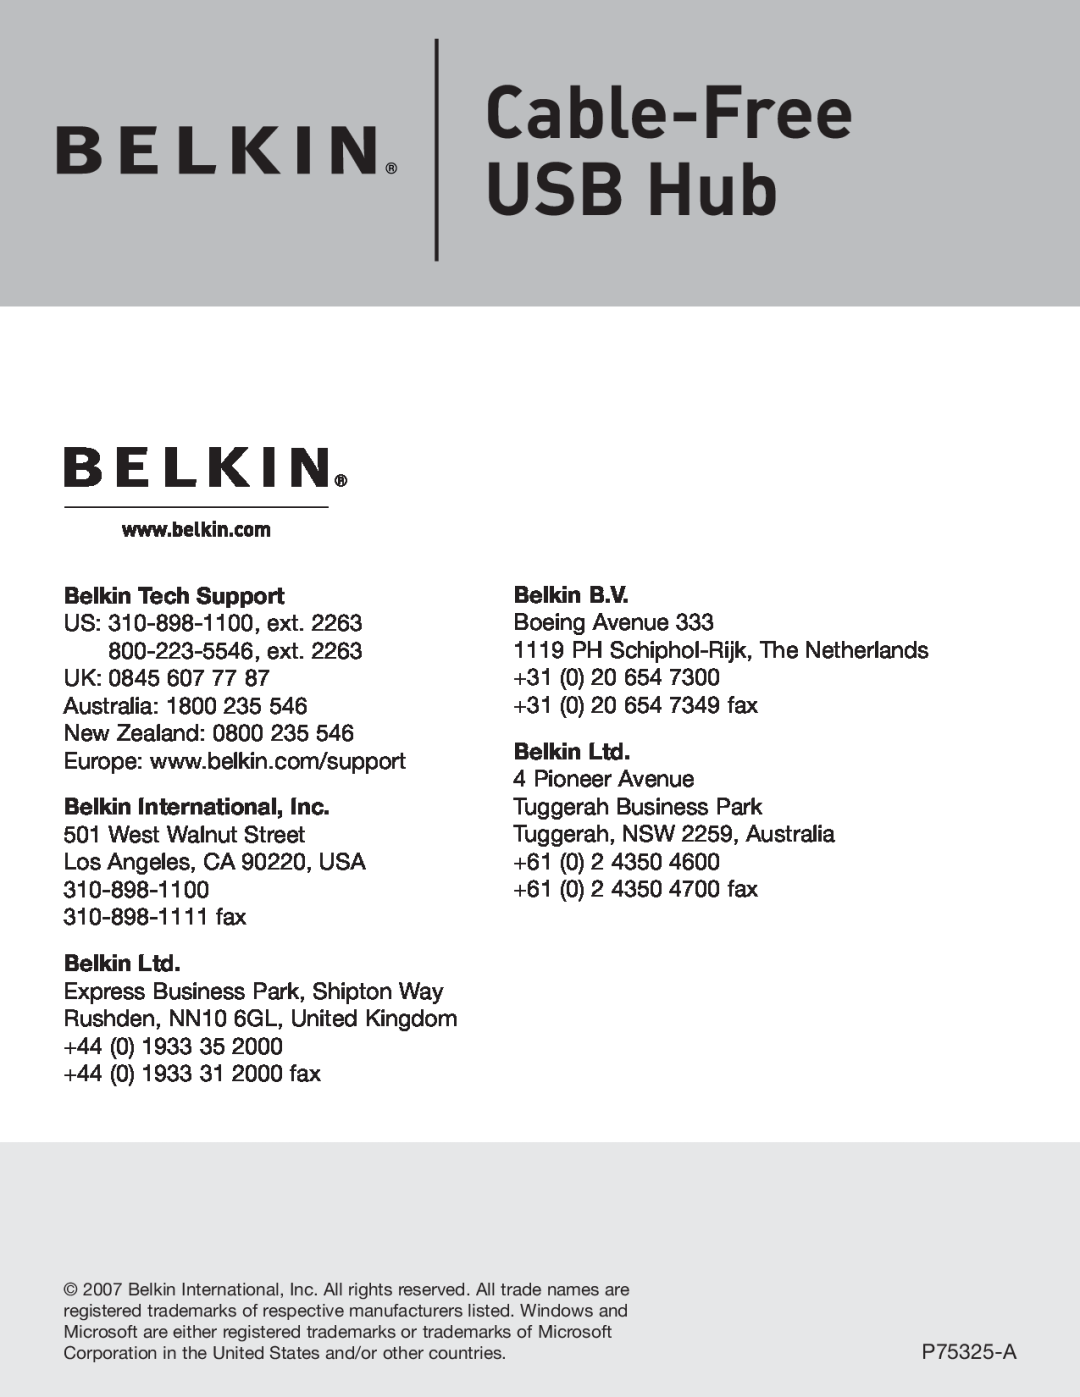 Belkin F5U301 user manual Cable-Free USB Hub, Belkin Tech Support, Belkin B.V 